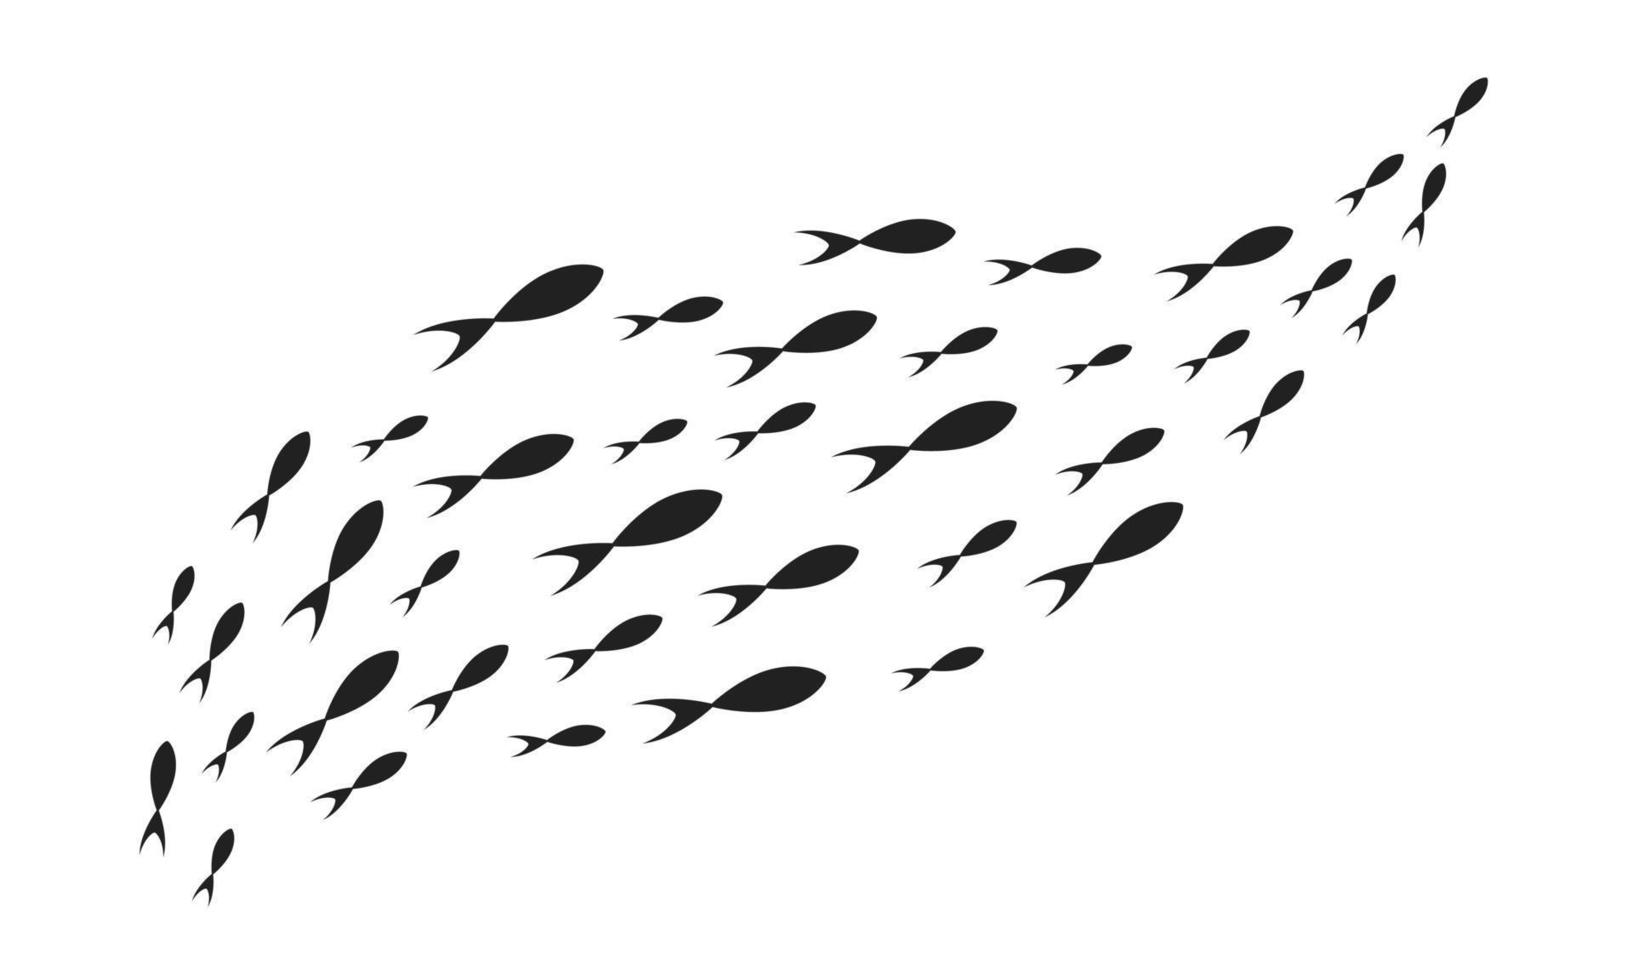 banco de siluetas de peces con vida marina de varios tamaños ilustración vectorial de diseño de estilo plano de peces nadadores. vector